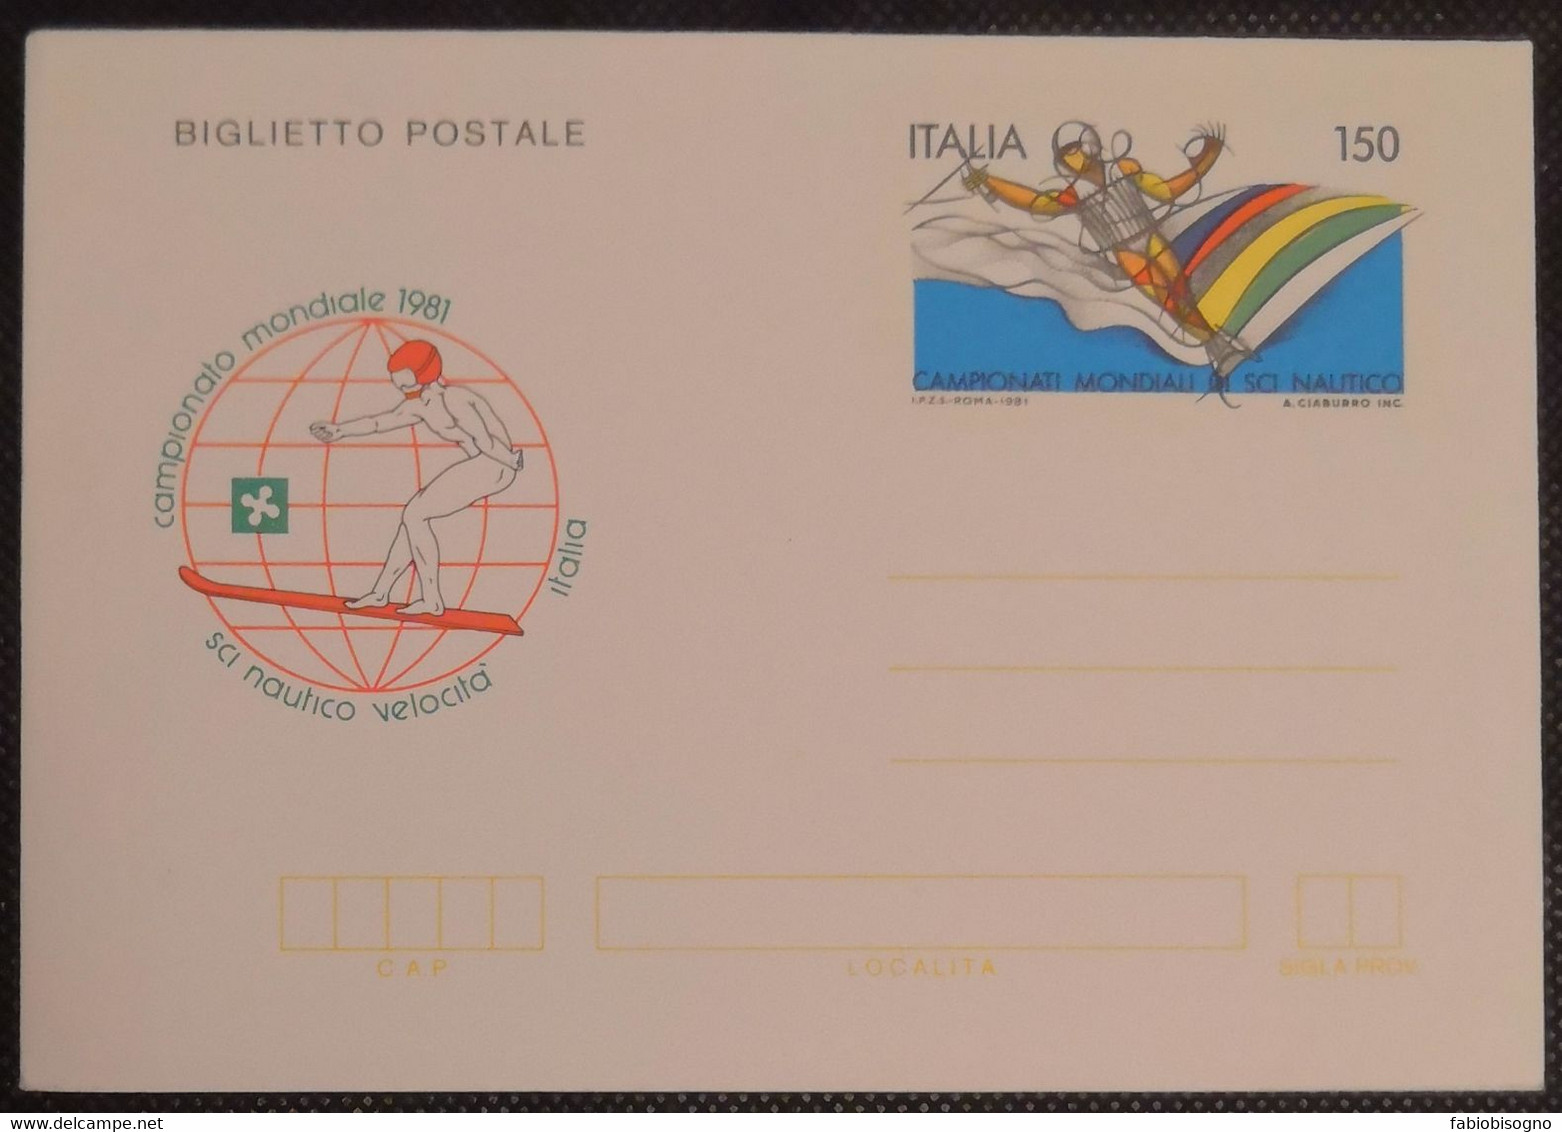 1981 Italia L.150 - Campionato Mondiale Sci Nautico Velocità - Postal Cover - Waterski